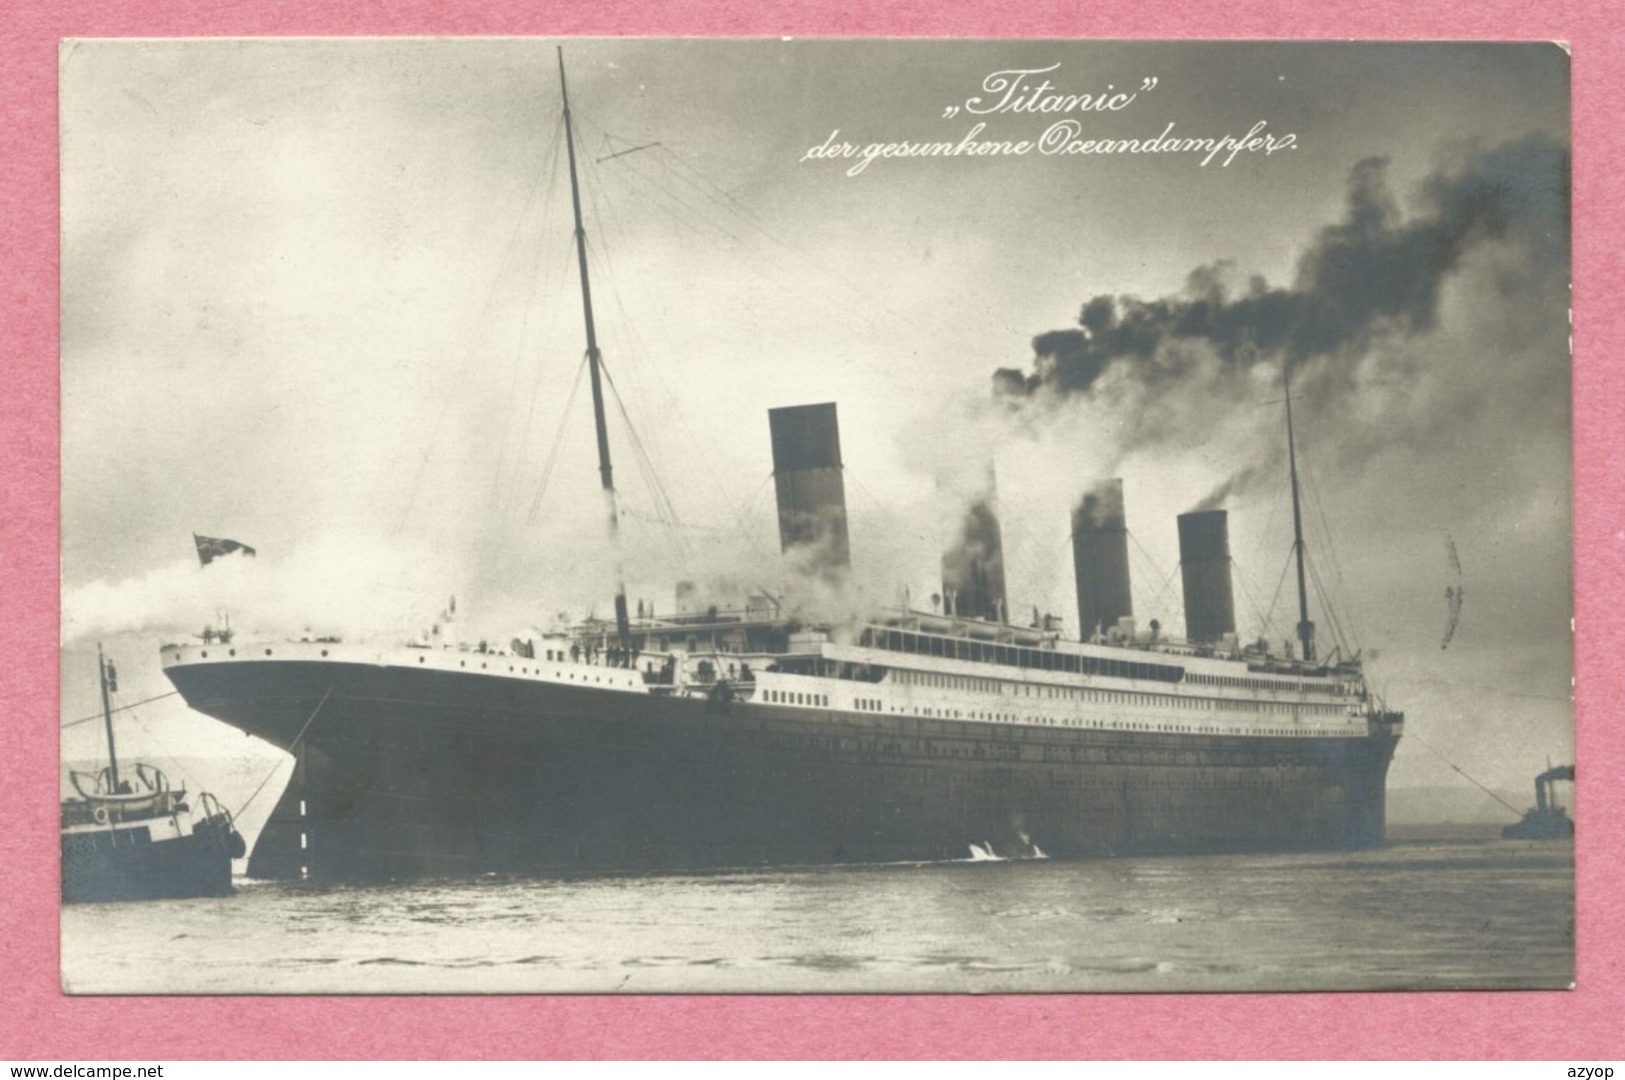 Paquebot -  " TITANIC " - Der Gesunkene Oceandampfer - La Carte A Voyagée Le 11 Septembre 1912 - 2 Scans - Paquebots